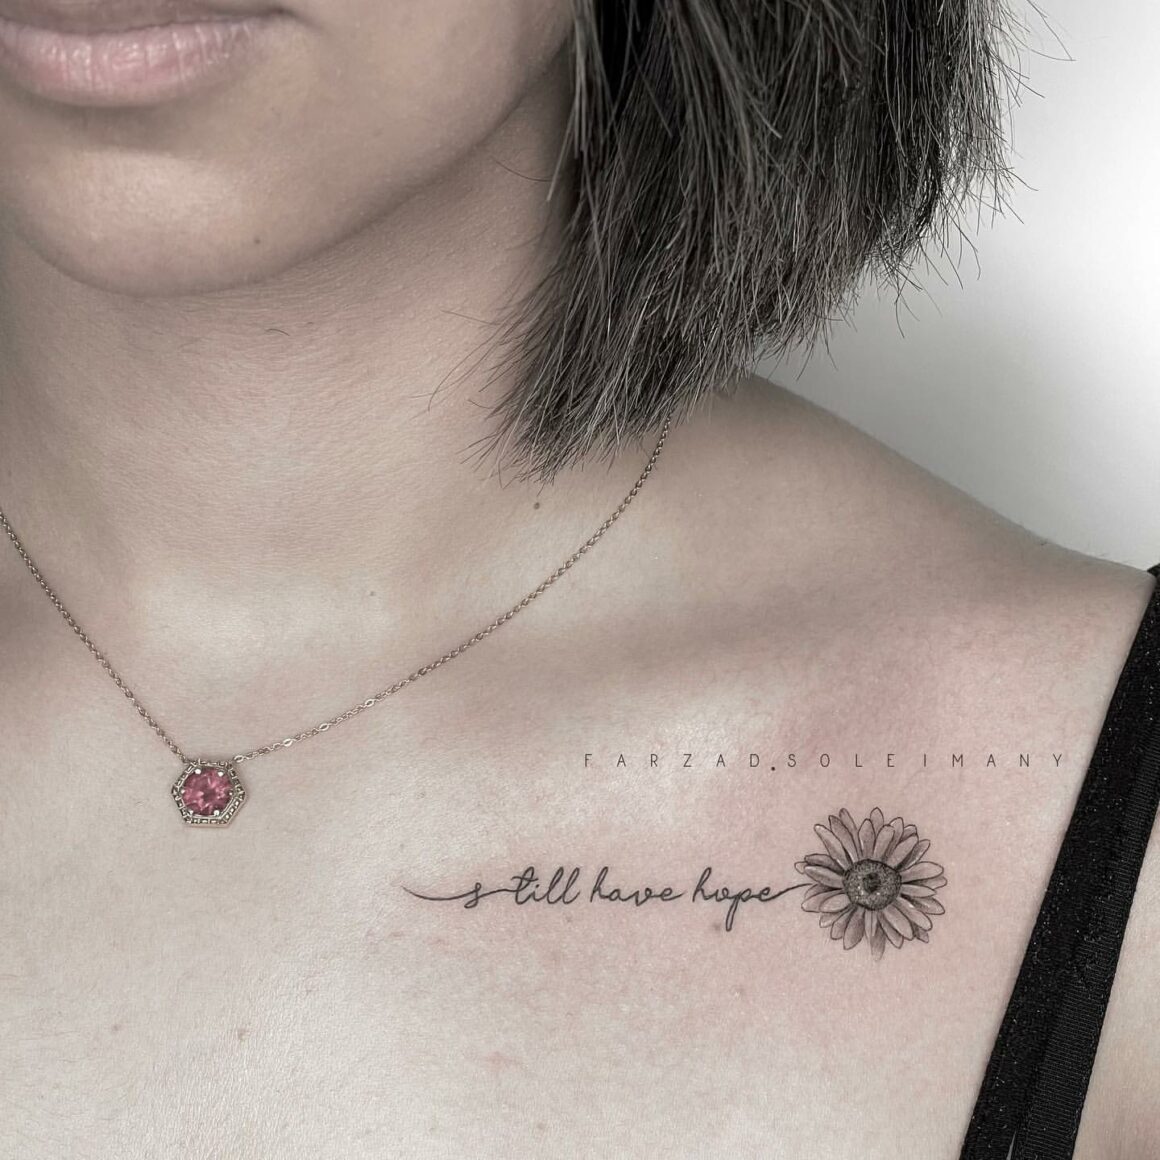 tattoo minimal inspiration